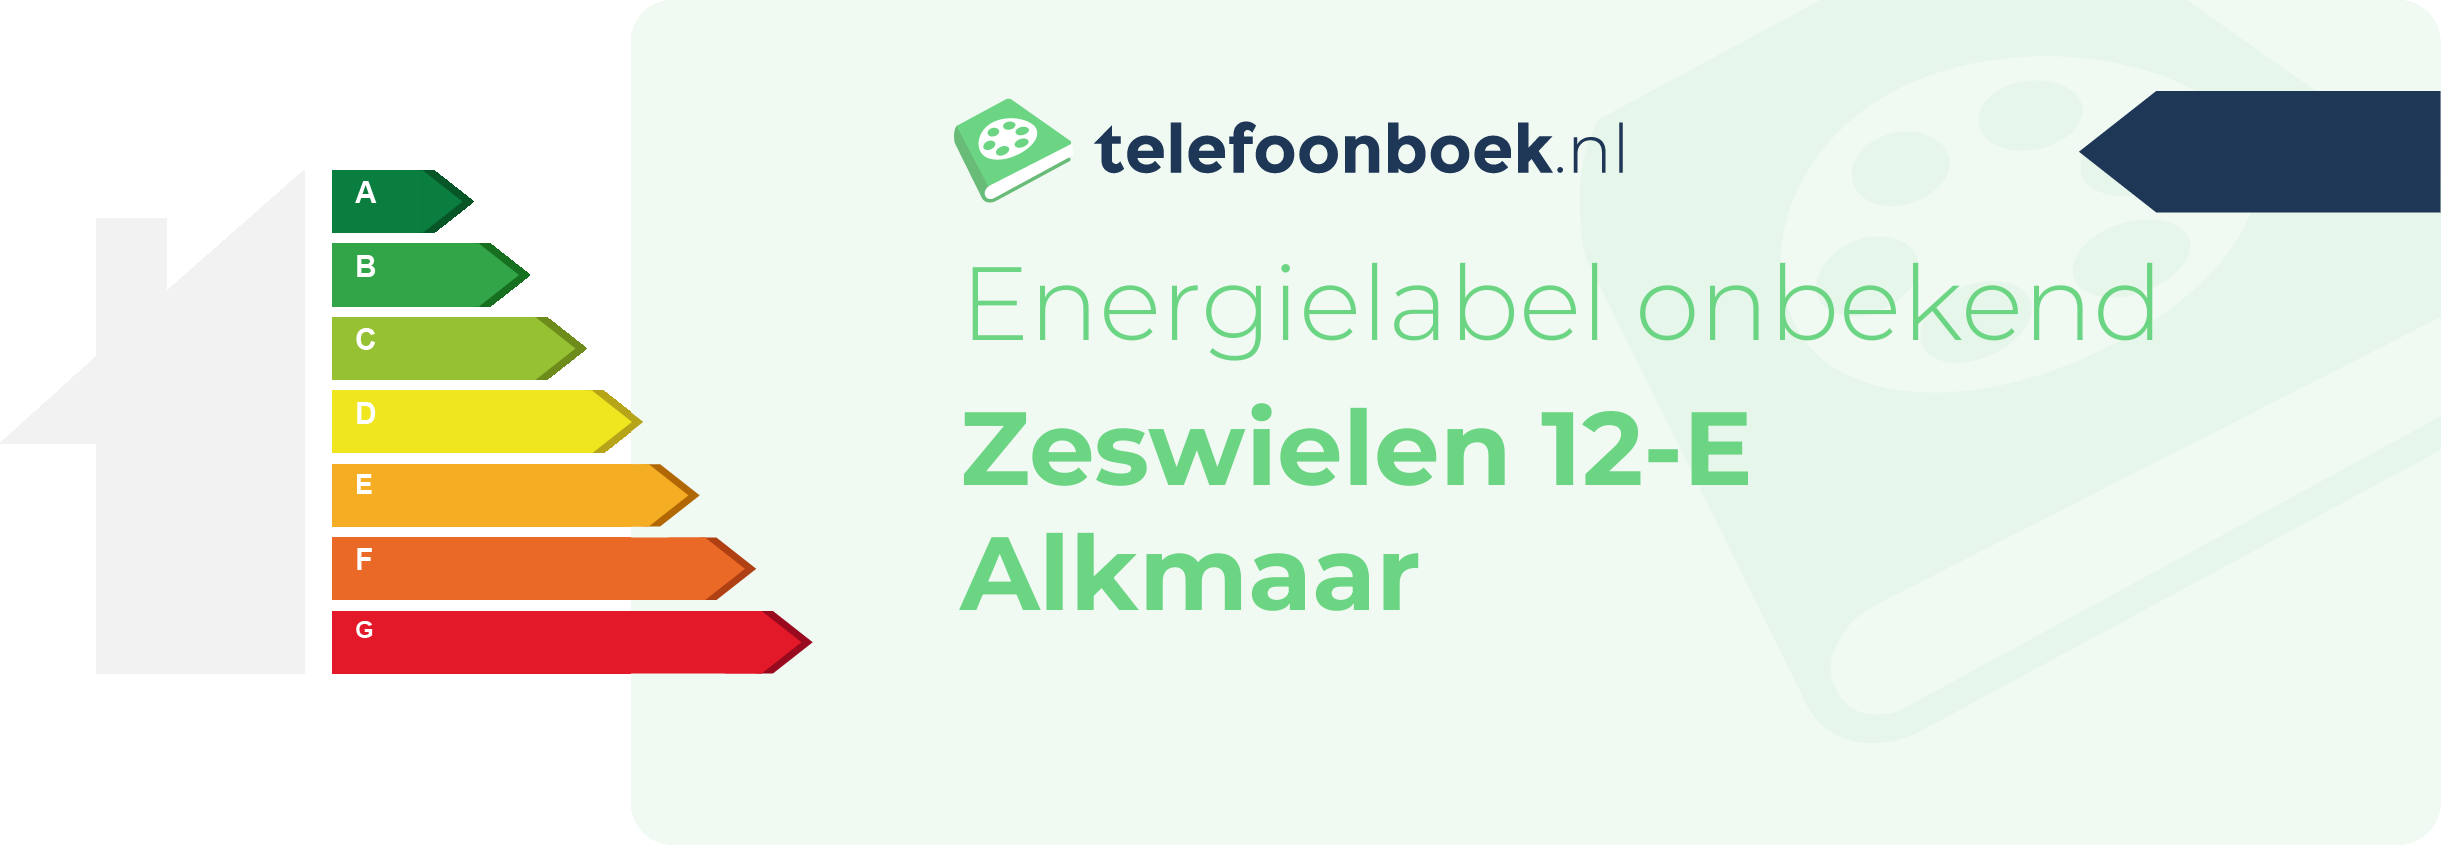 Energielabel Zeswielen 12-E Alkmaar